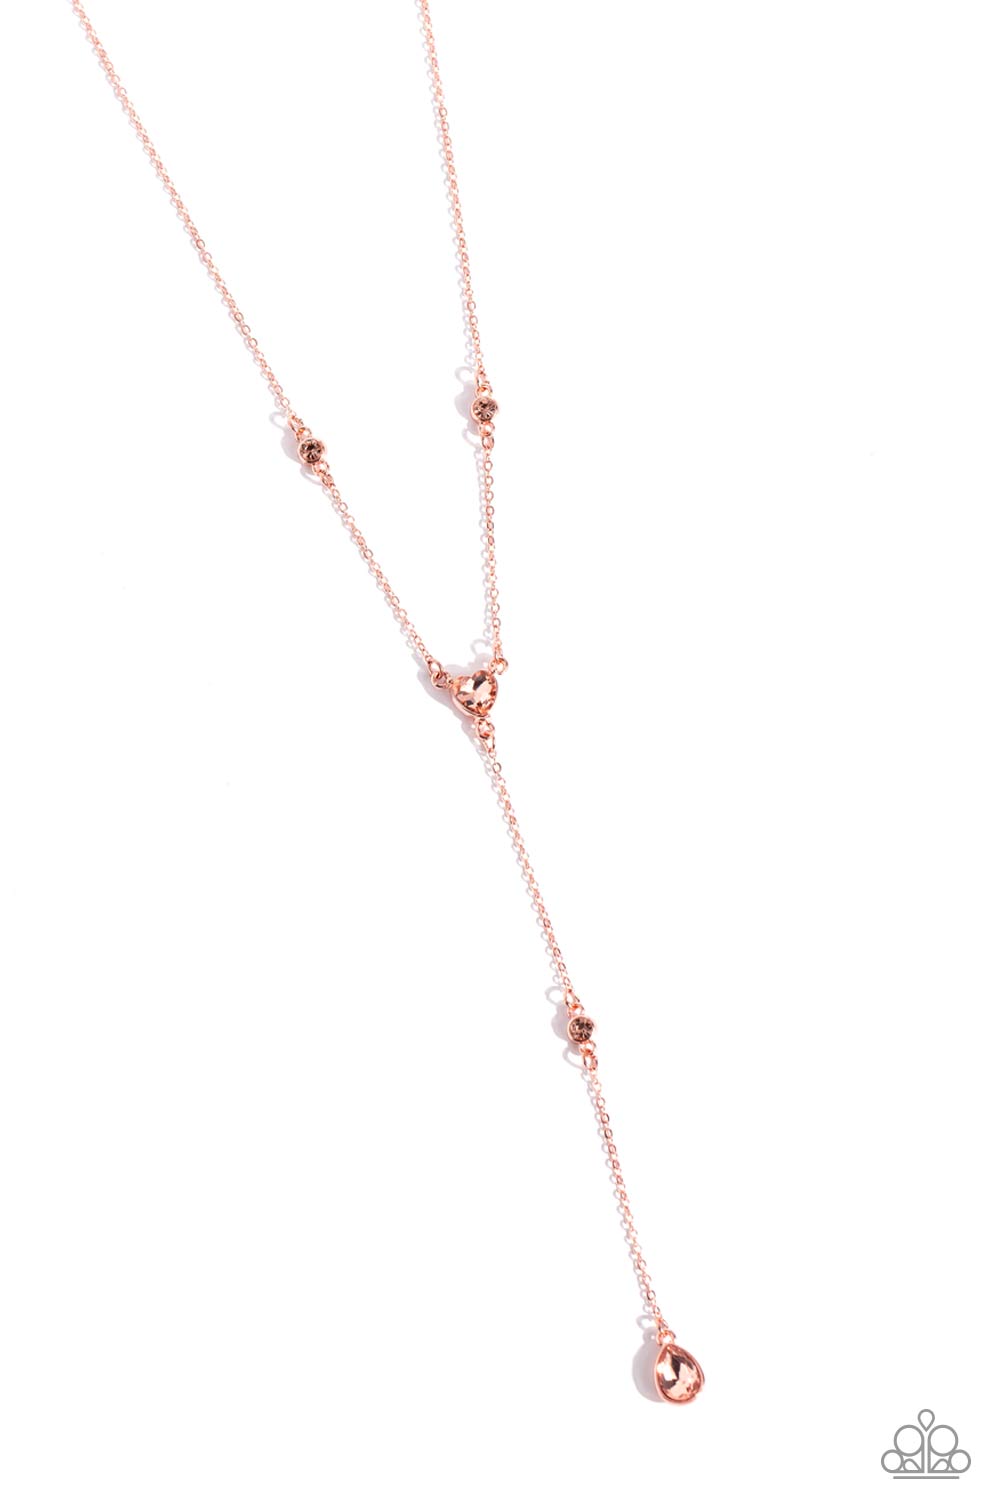 Lavish Lariat - copper - Paparazzi necklace